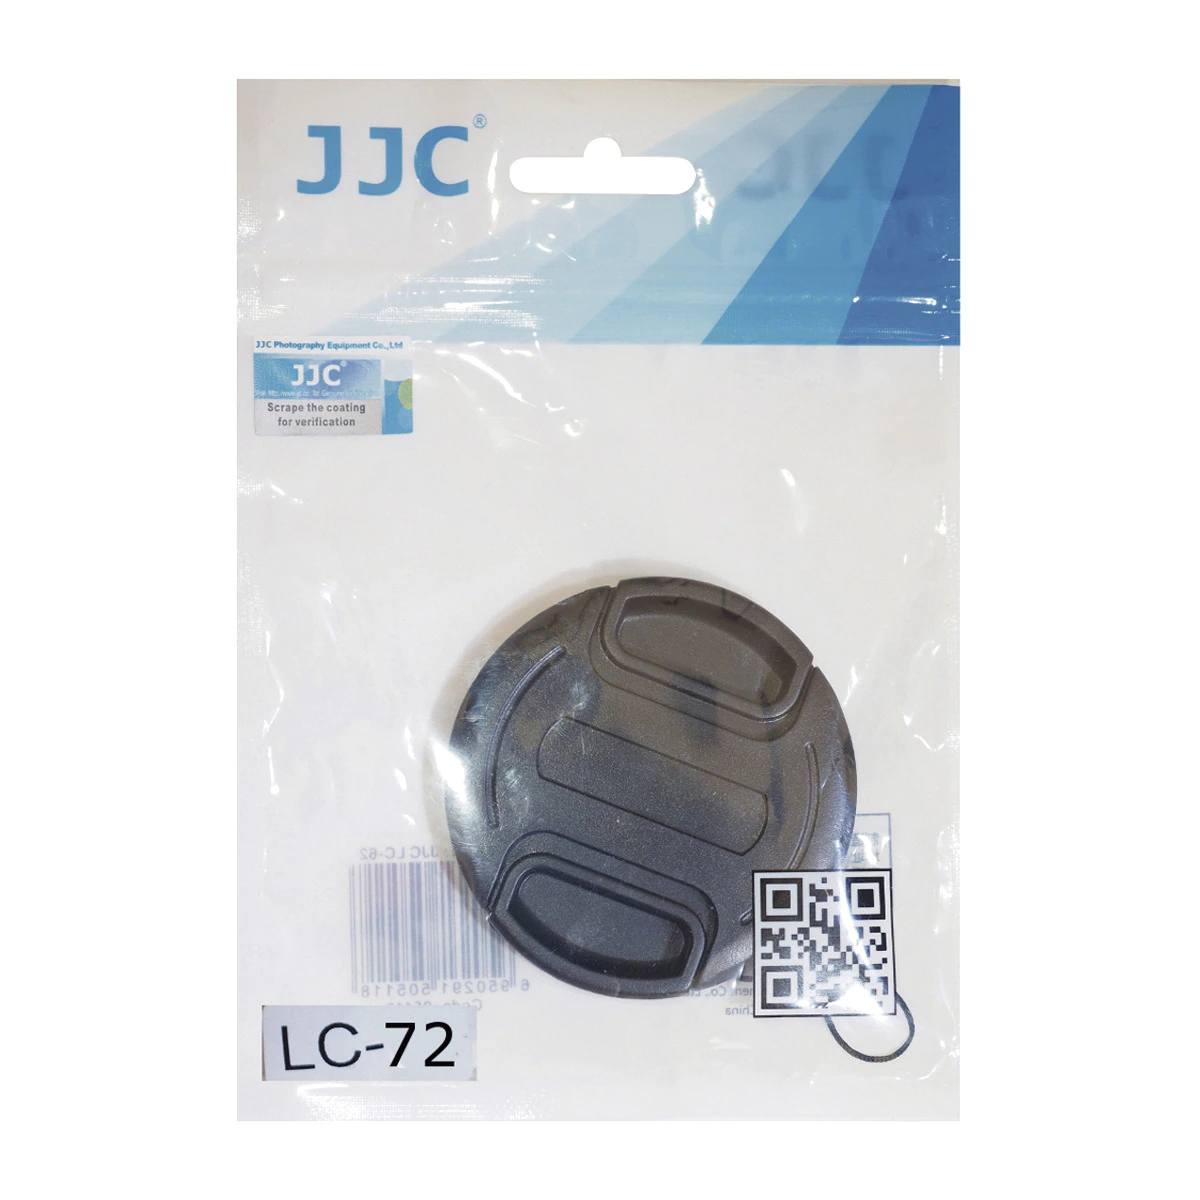 Tapa de protección JJC para objetivos con diametro 72 mm